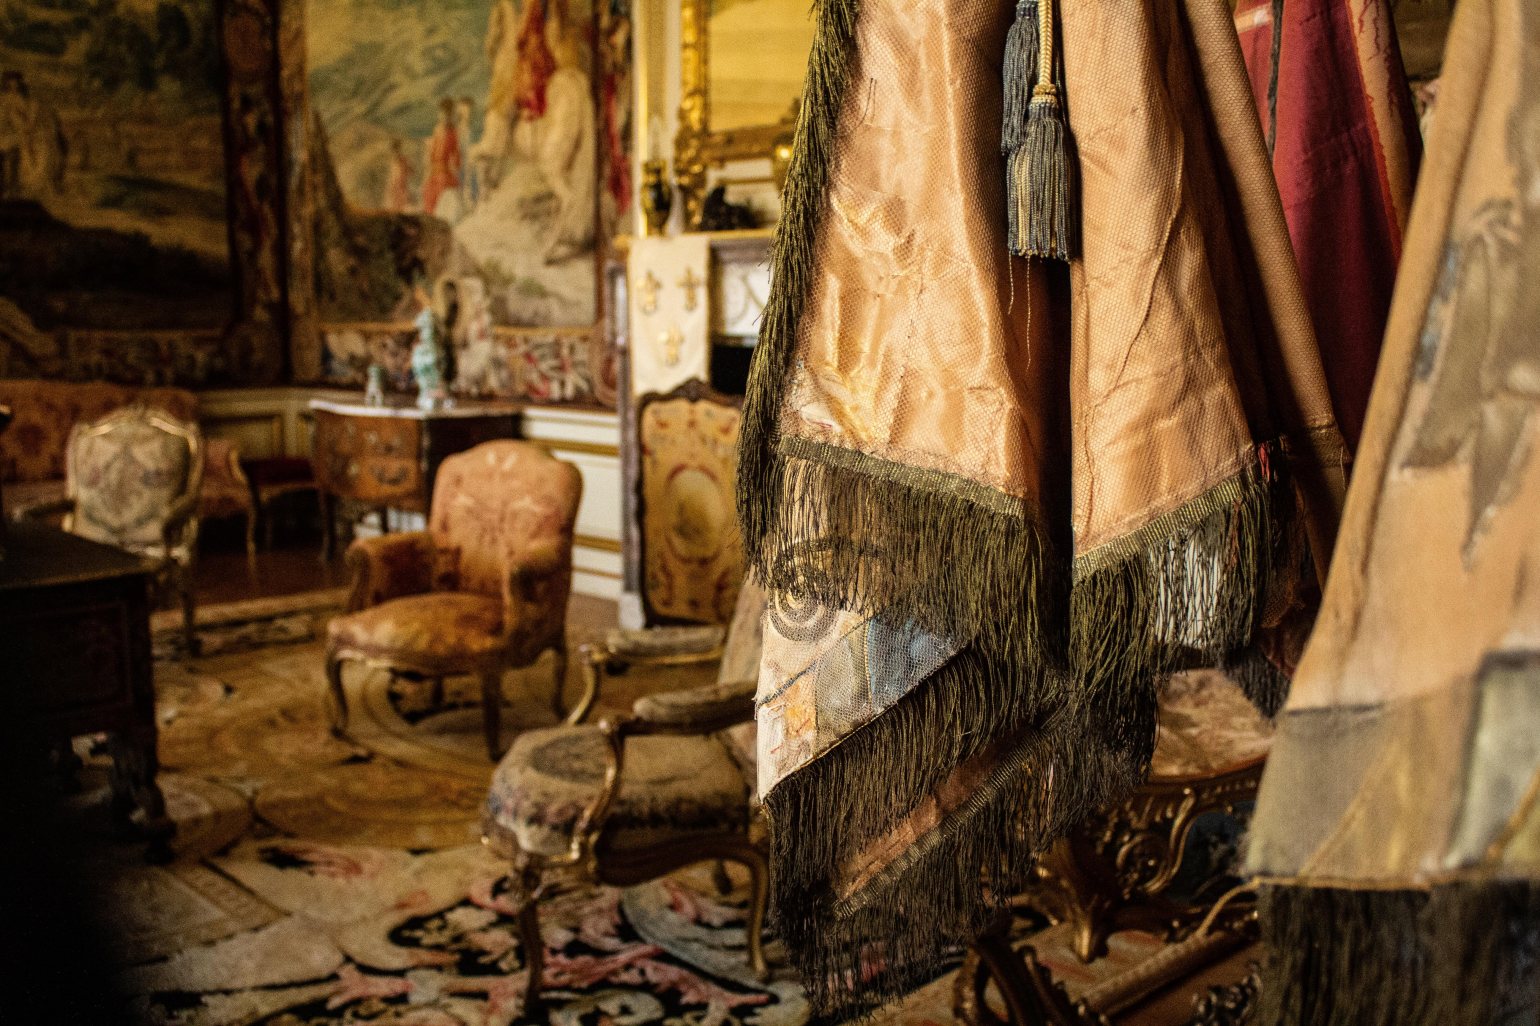 Royalcore antique interior furniture design fabrics